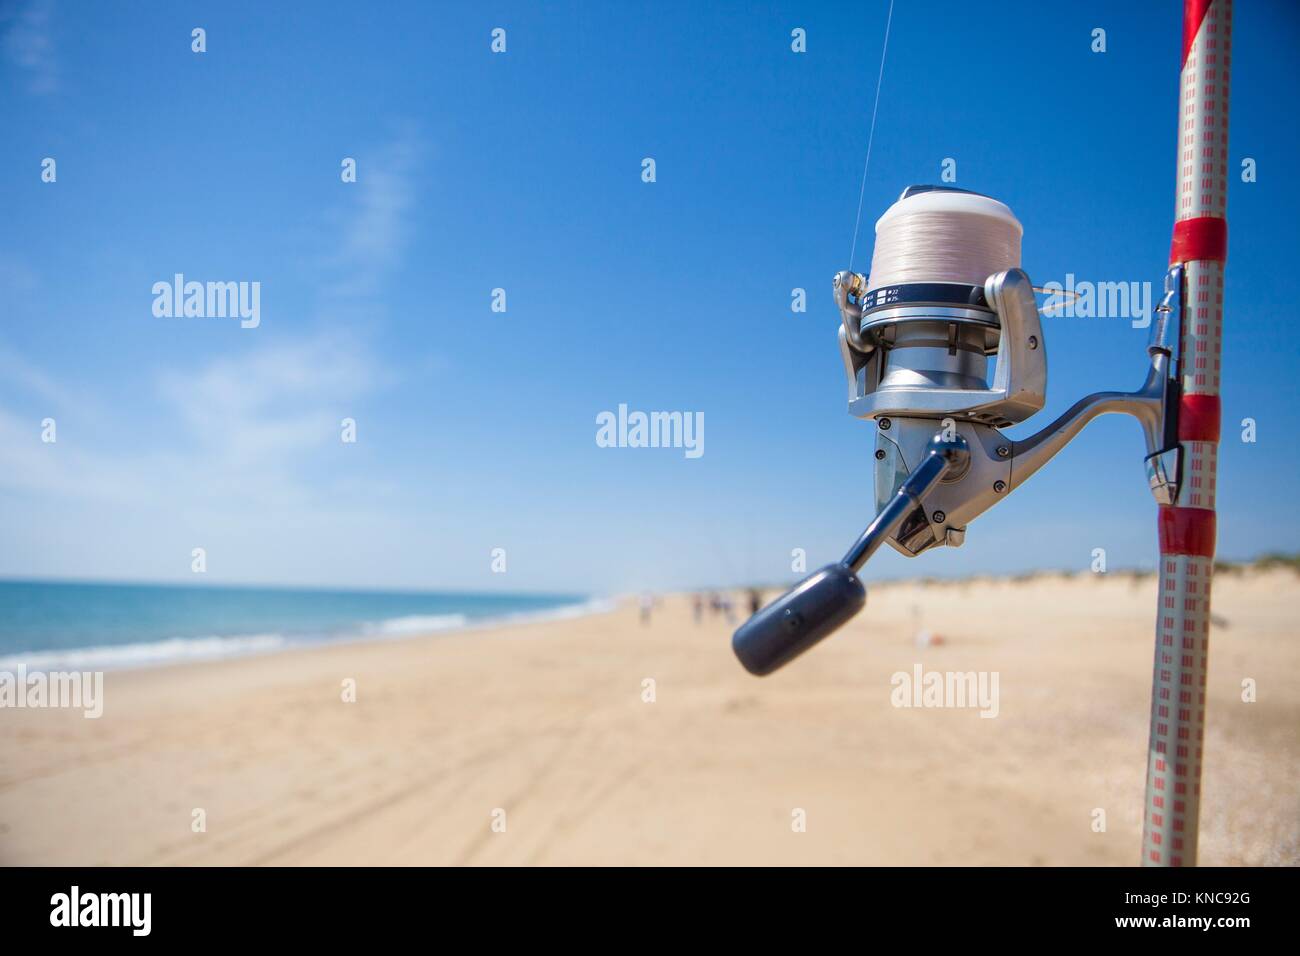 Mulinello da pesca sull'asta dettaglio con angolatura pescatori a fondo sul mare, Huelva, Spagna. Foto Stock